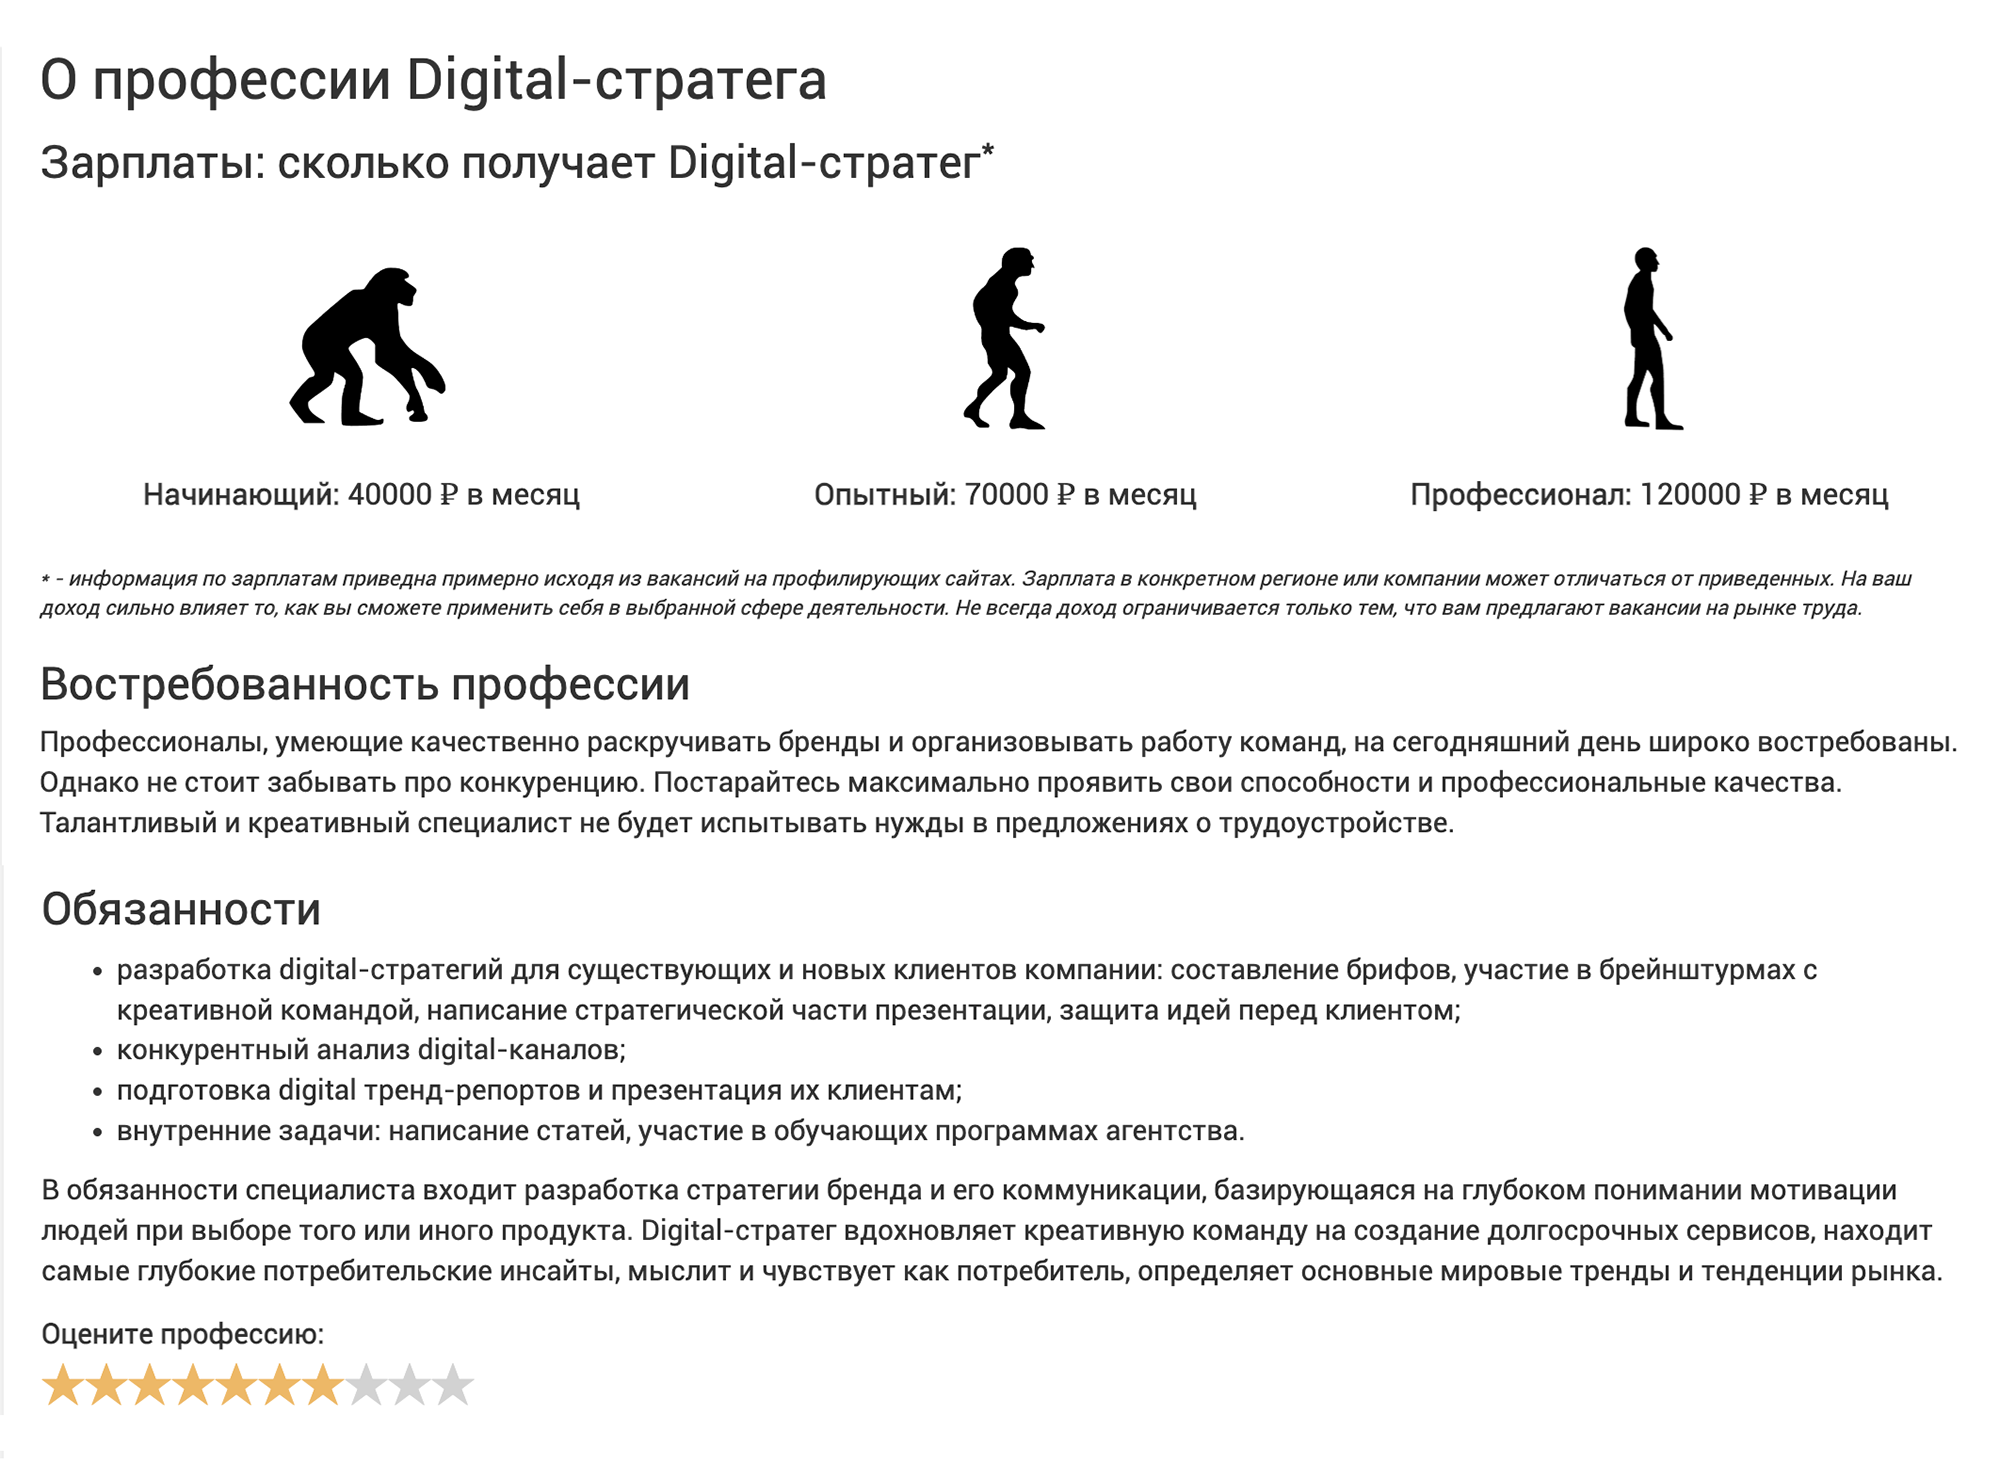 Так выглядит страничка профессии цифрового стратега. Источник: vuzopedia.ru